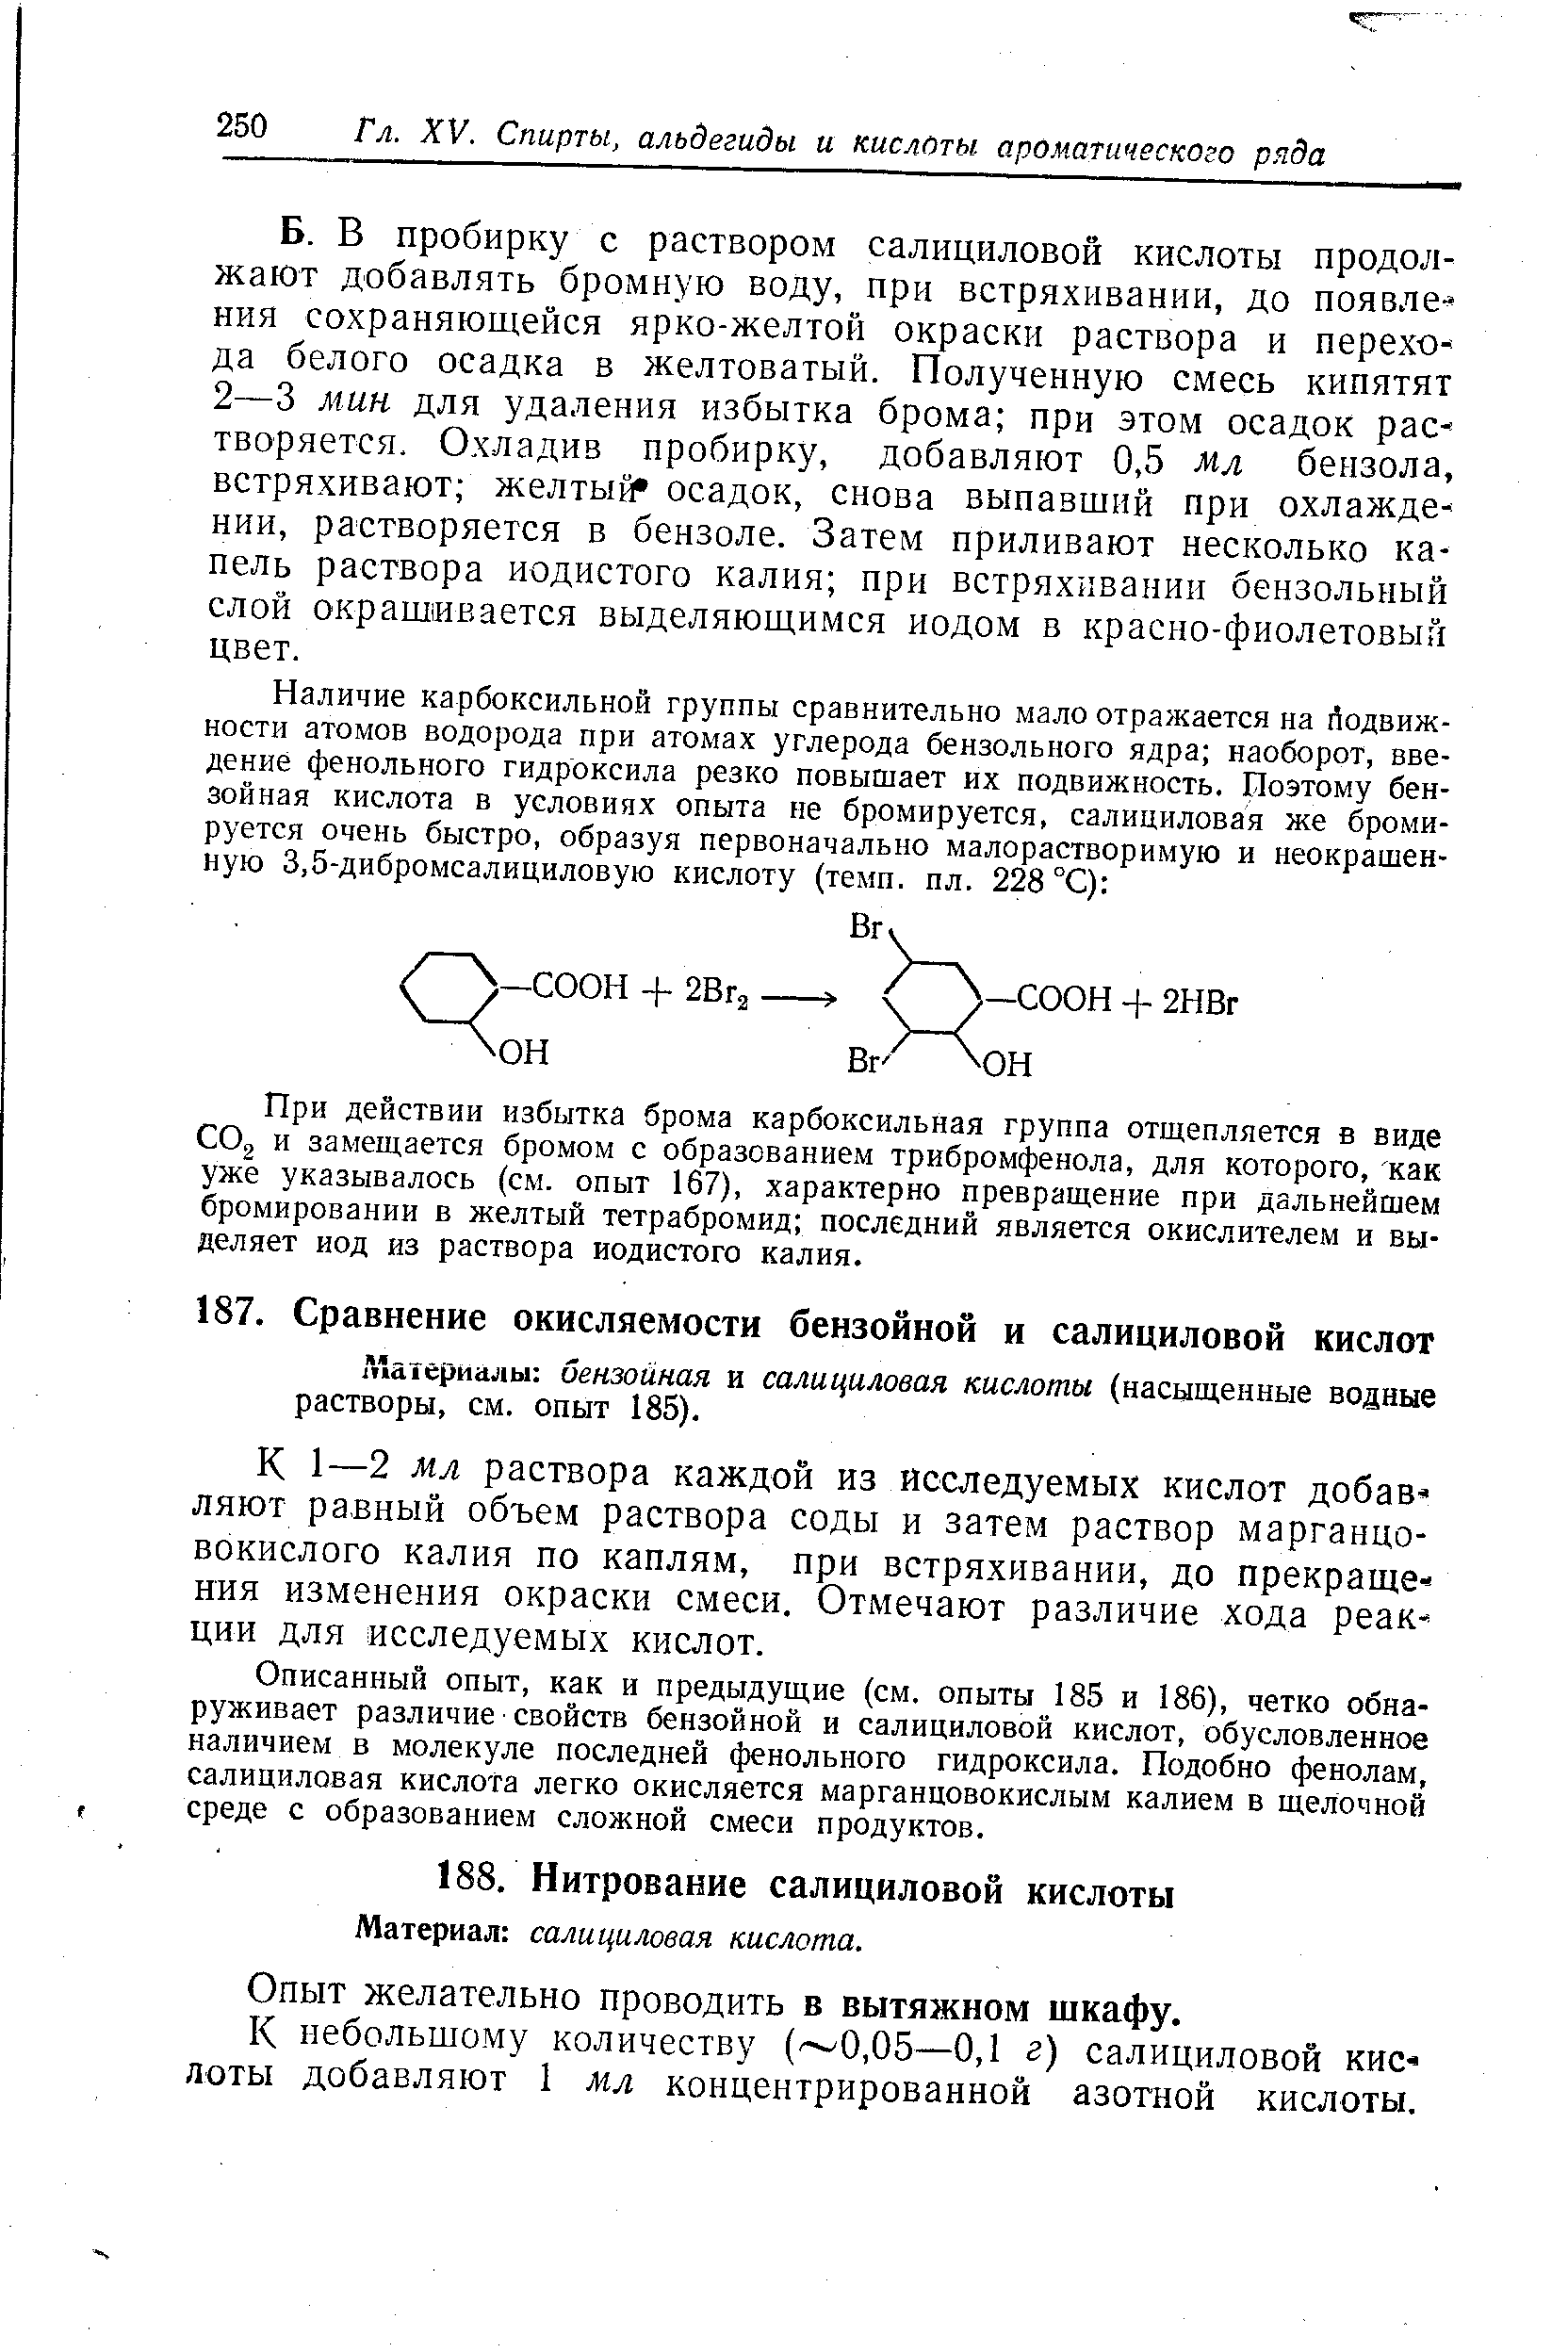 Л атериалы бензойная и салициловая кислоты (насыщенные водные растворы, см. опыт 185).